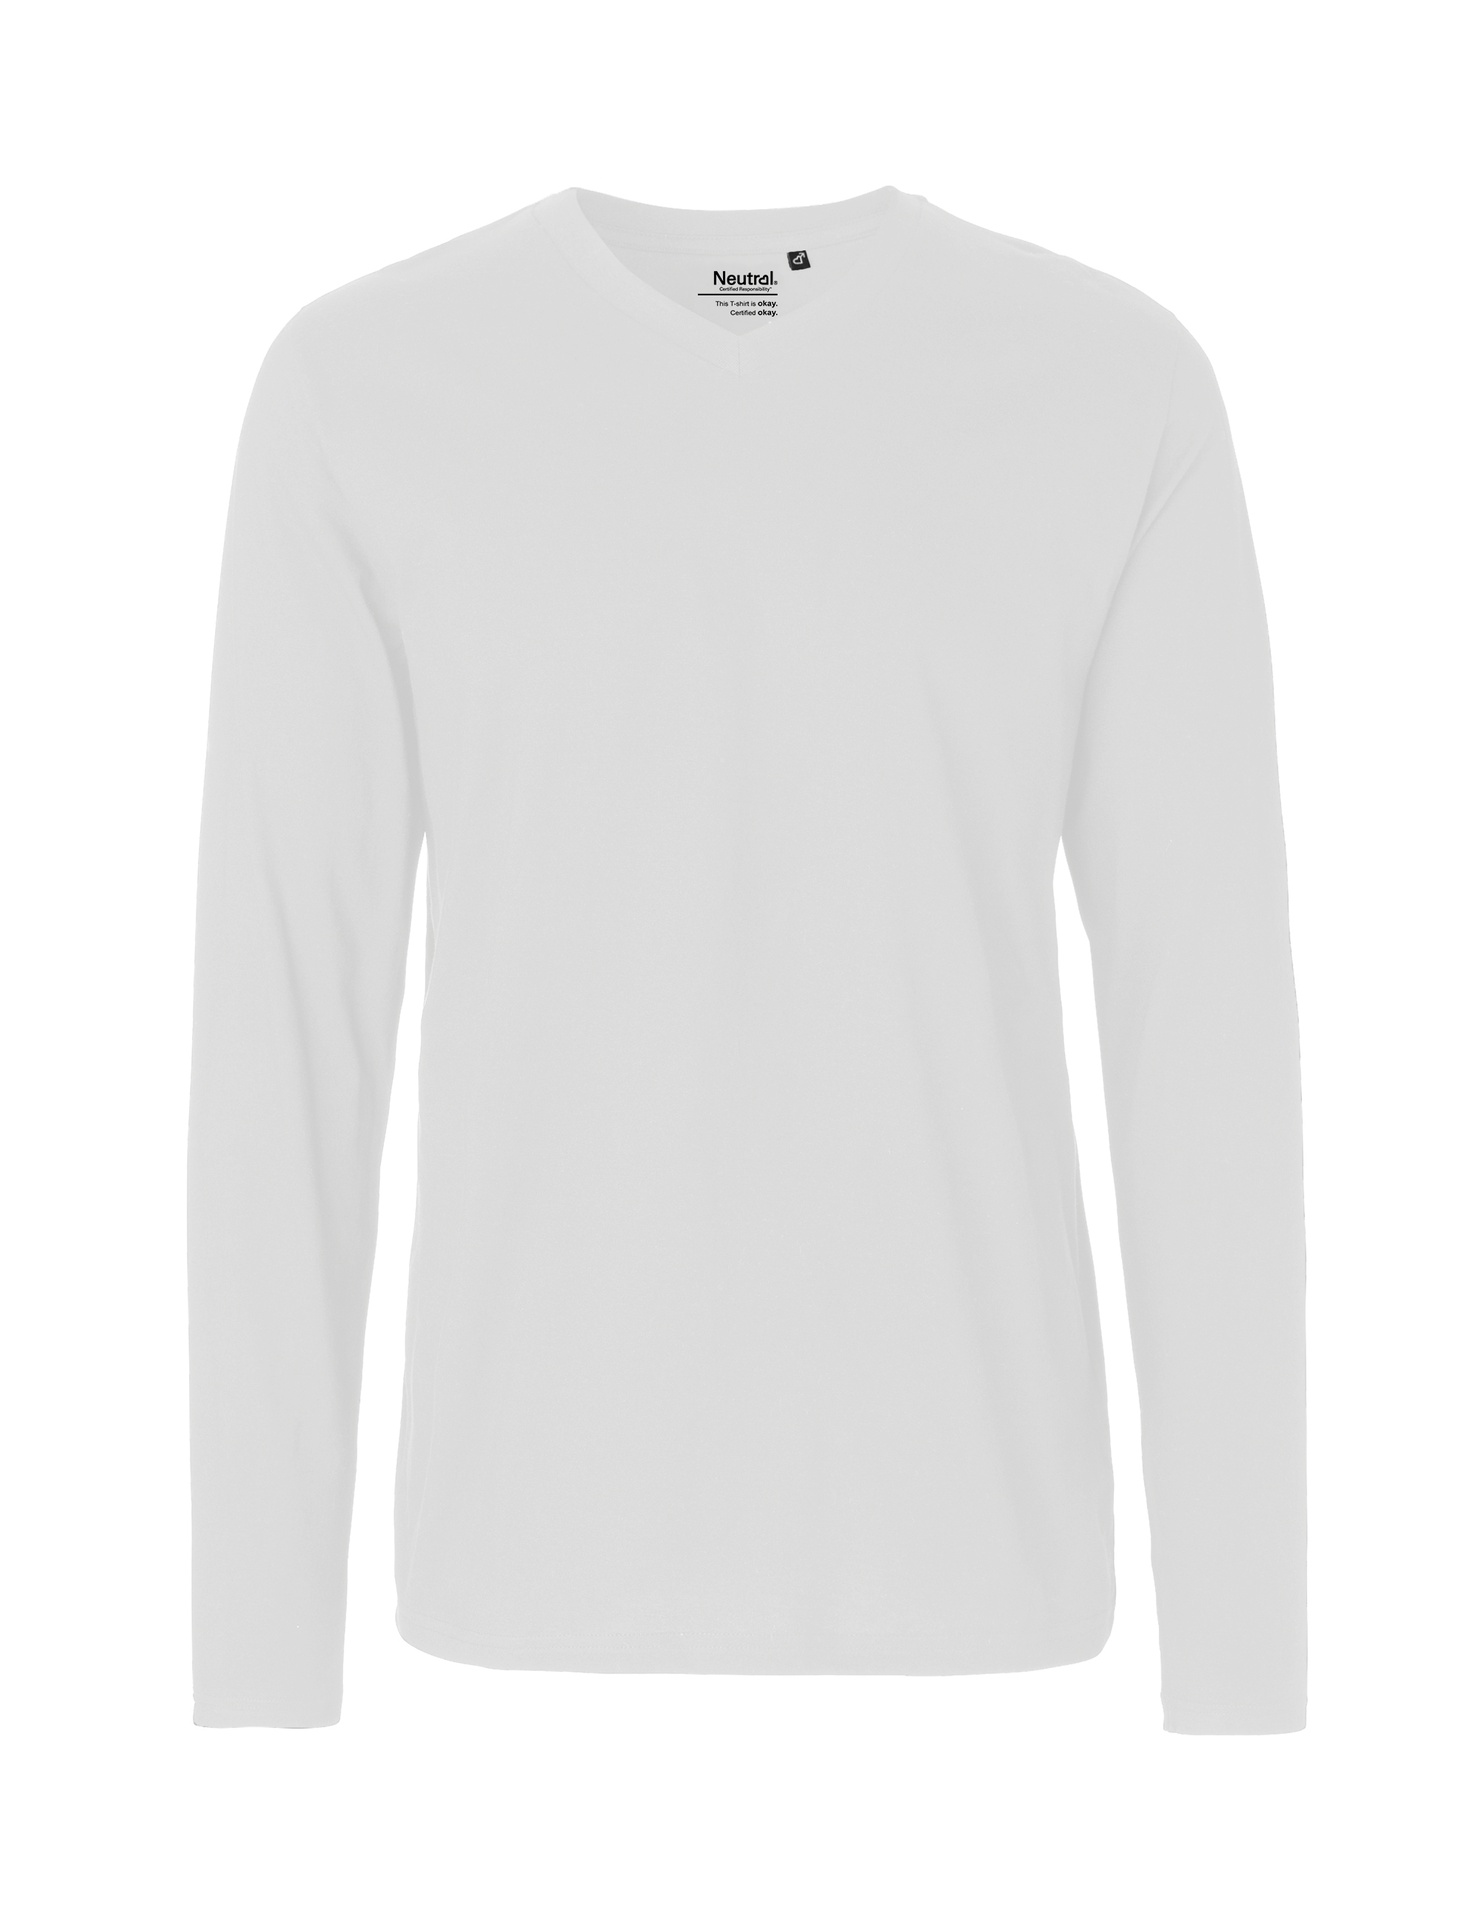 [PR/02483] Mens Long Sleeve V-Neck T-Shirt (White 01, 3XL)